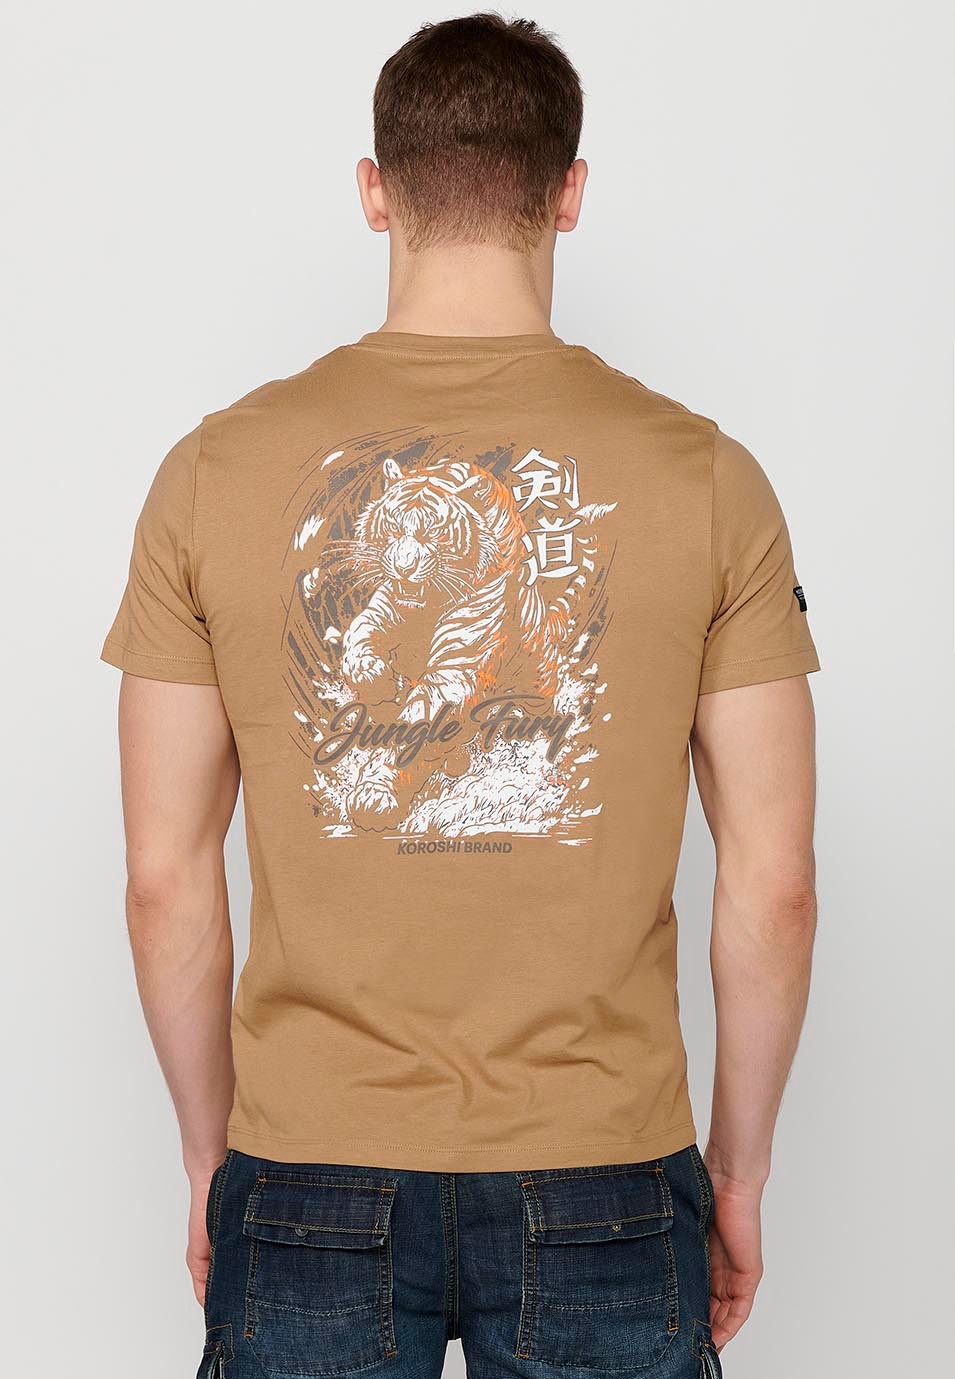 Camiseta de manga corta de algodon y estampado trasero jungle tigger, color camel para hombre